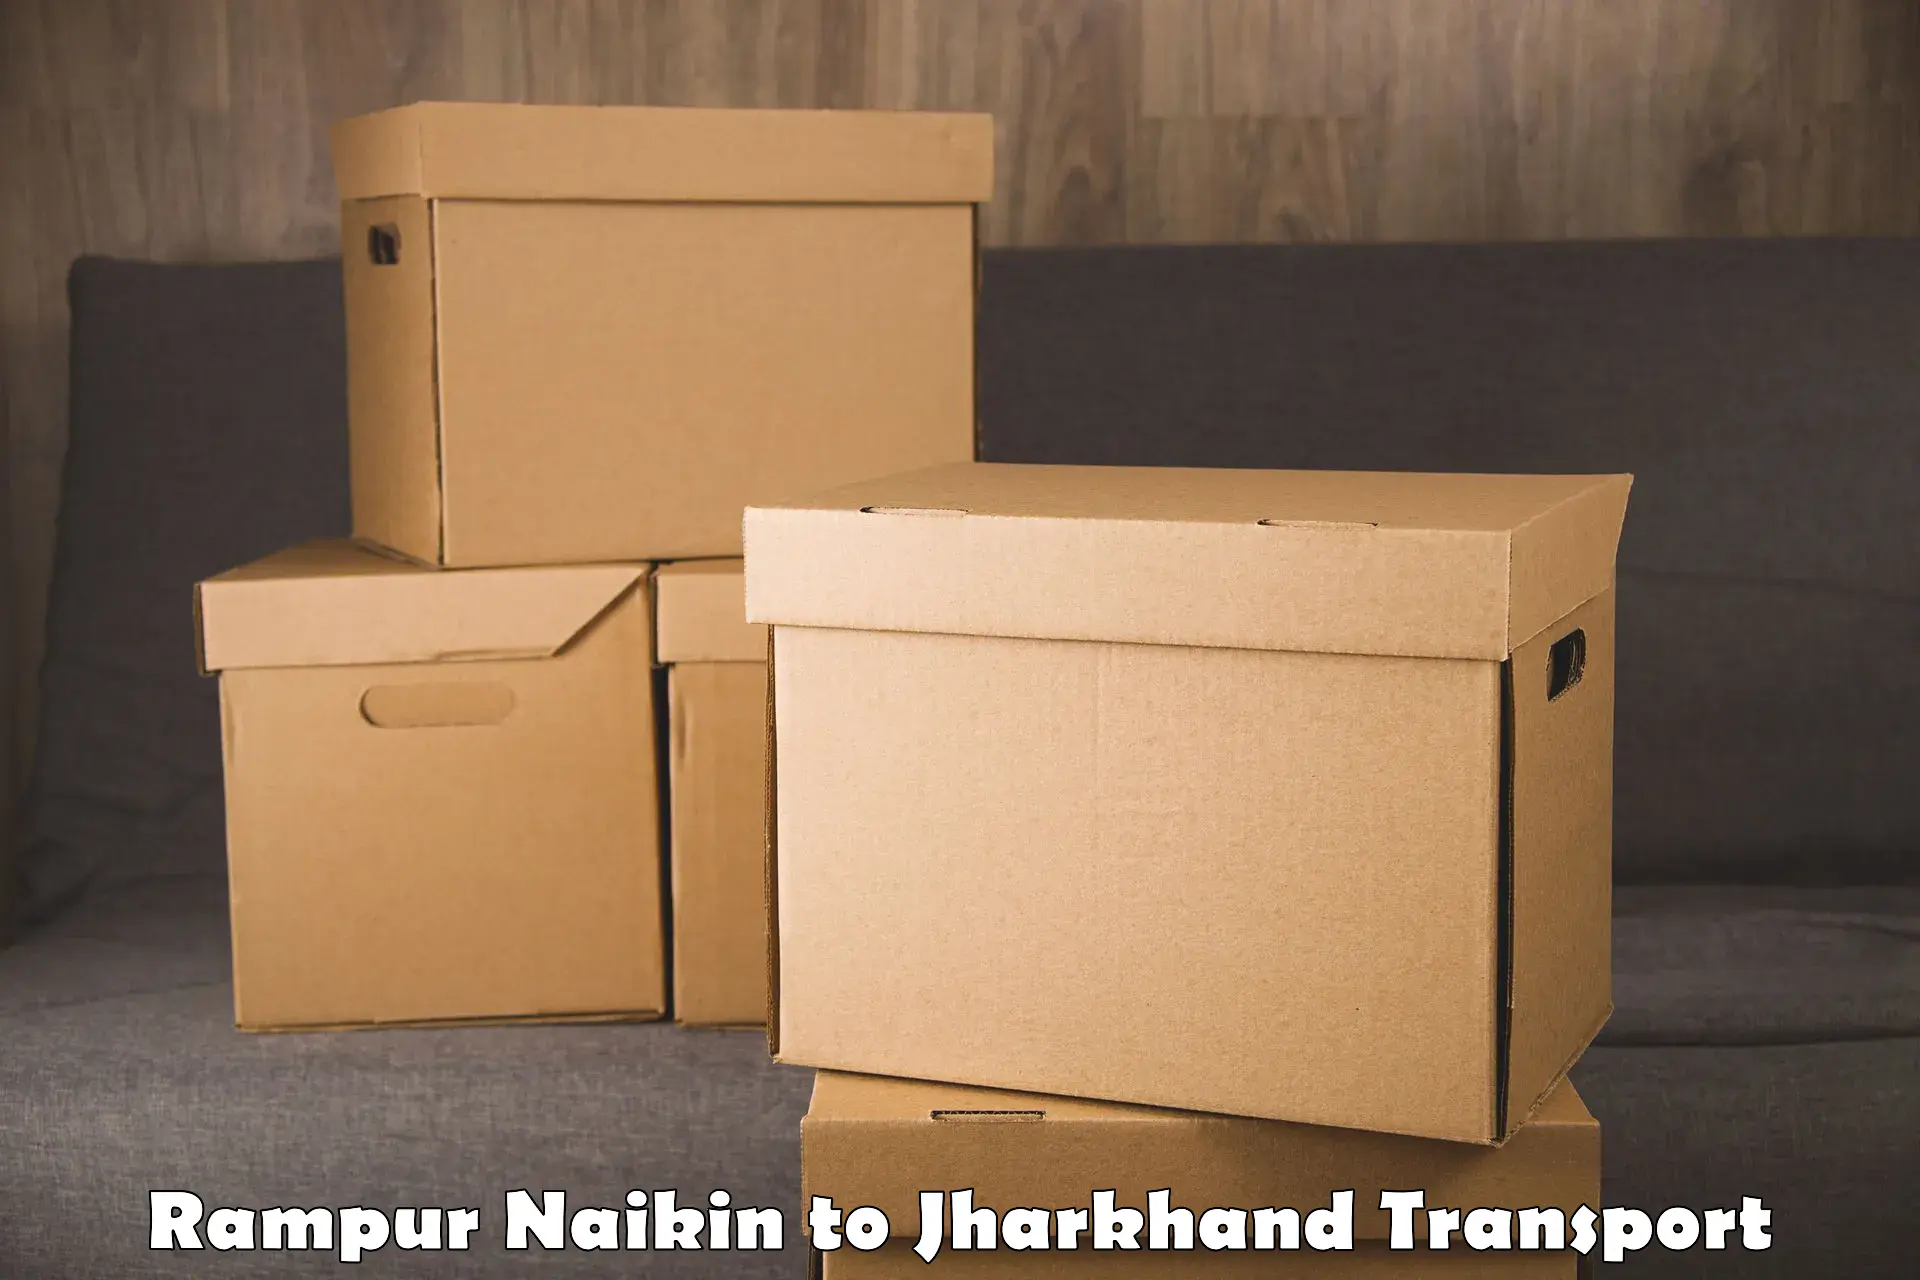 Interstate transport services Rampur Naikin to Poreyahat